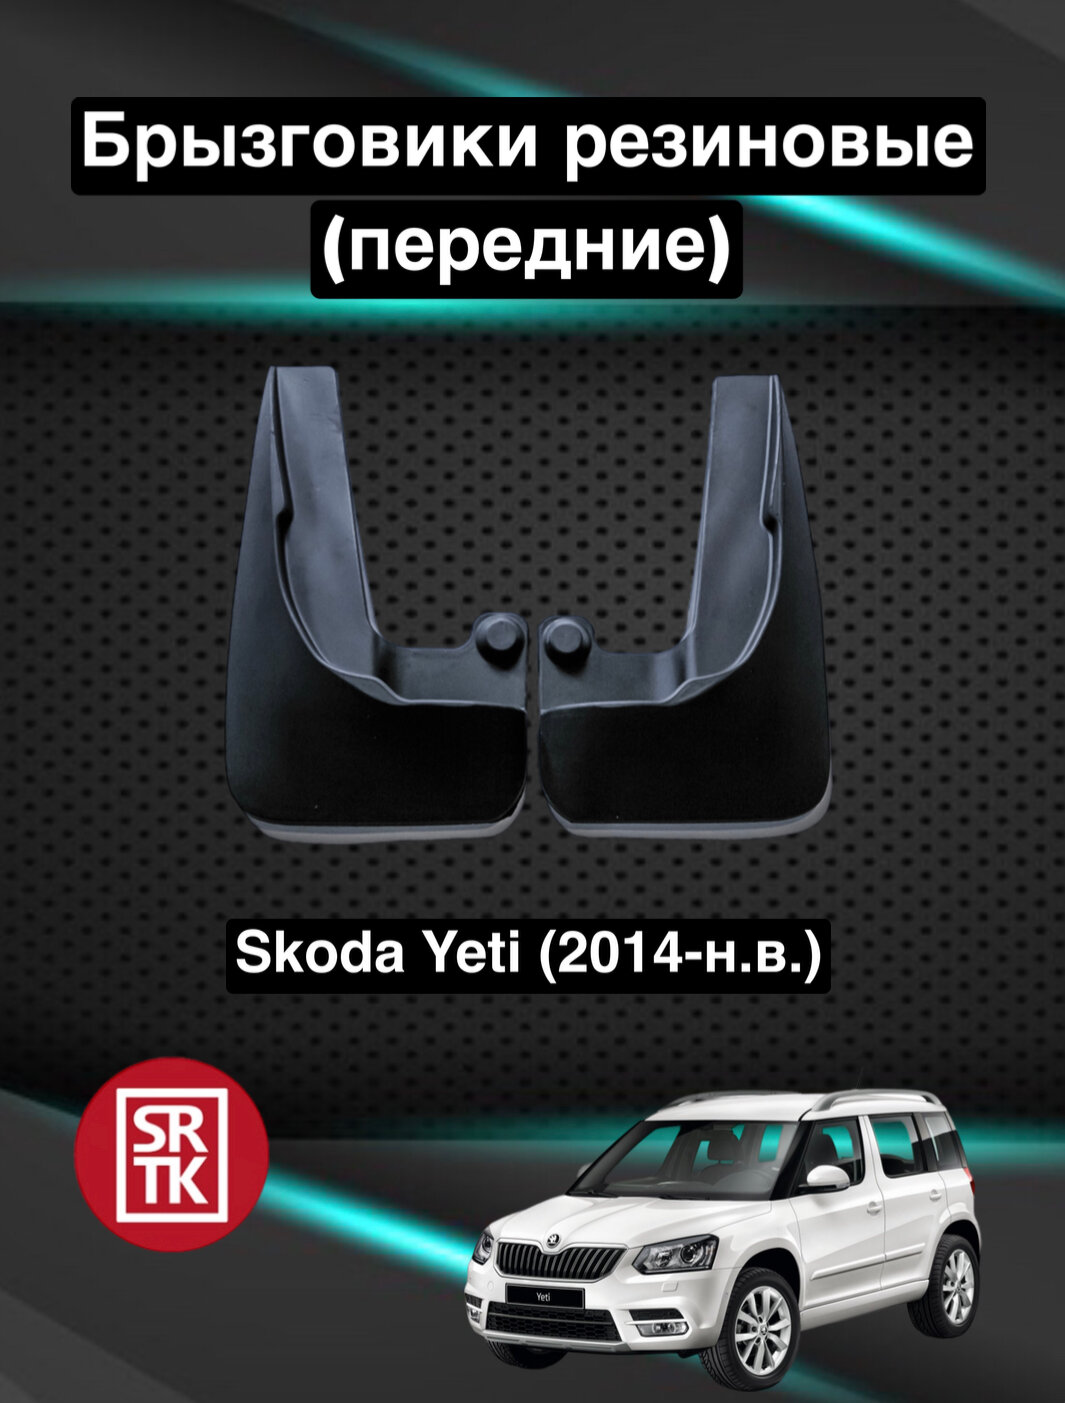 Брызговики резиновые для Skoda Yeti (2014-) / Брызговики автомобильные для Шкода Йети / Передние